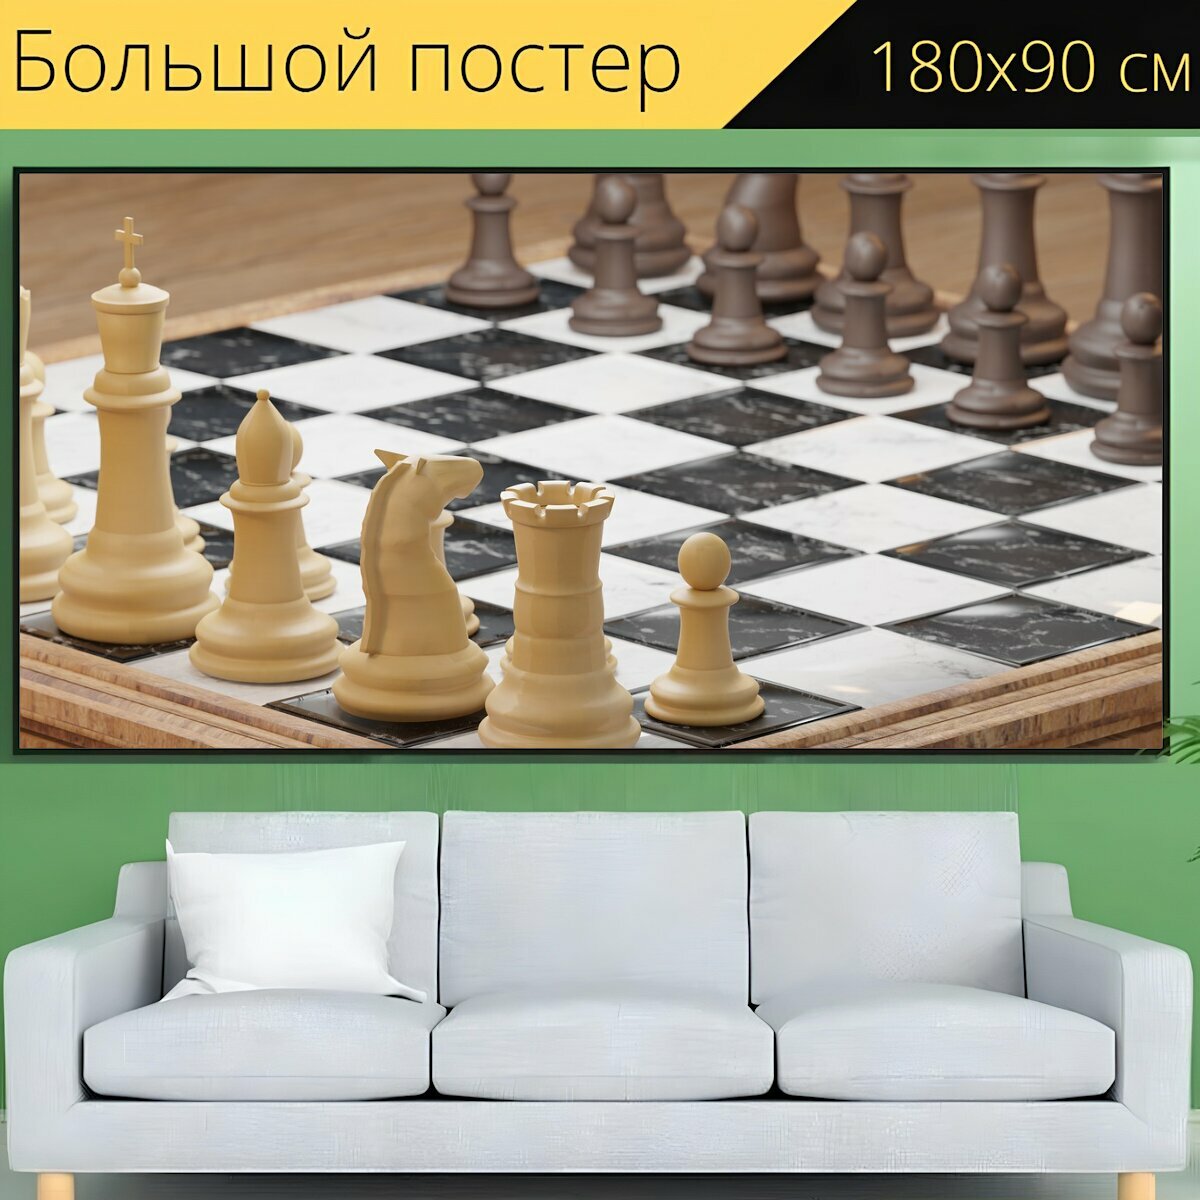 Большой постер "Шахматы, рыцарь, игра" 180 x 90 см. для интерьера